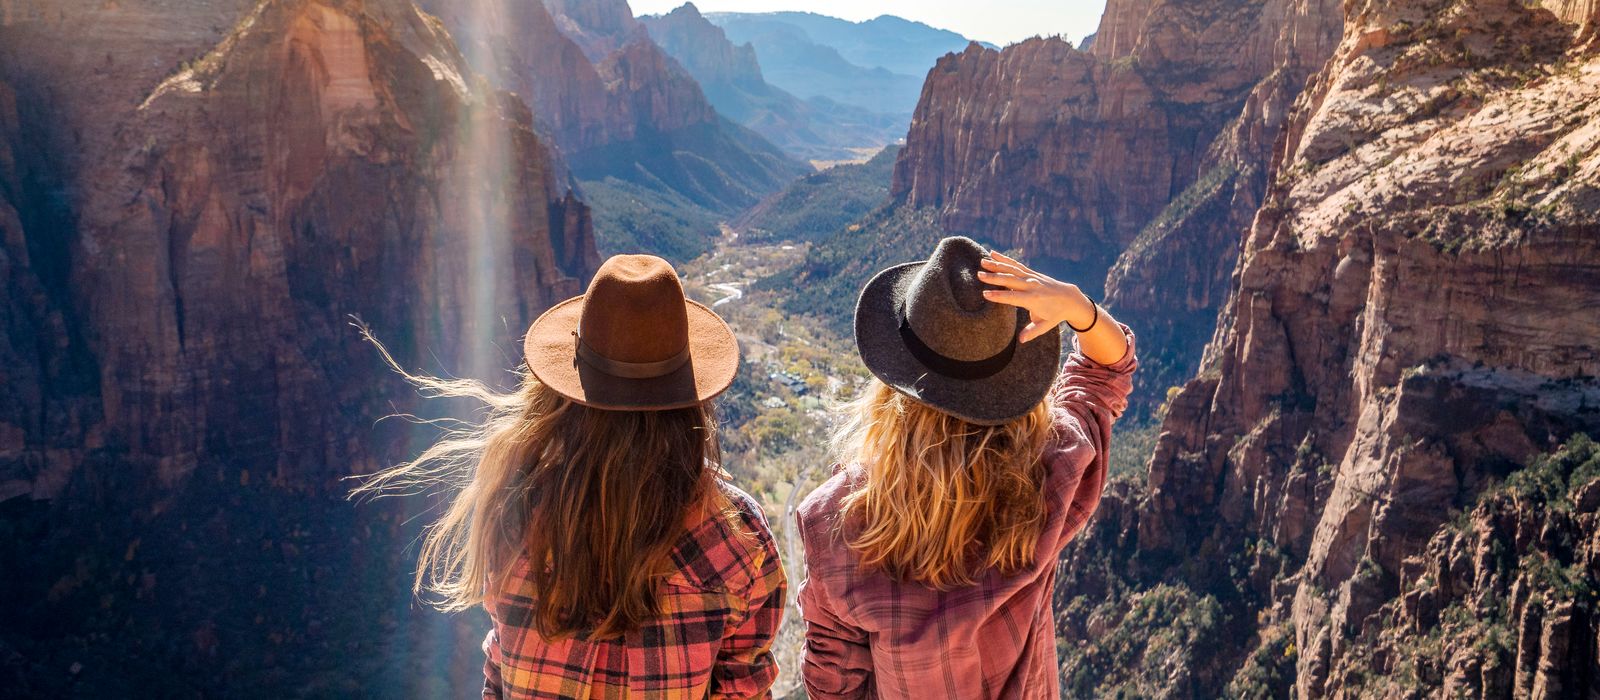 Zwei Frauen bestaunen den traumhaften Blick auf den Zion Nationalpark in Utah